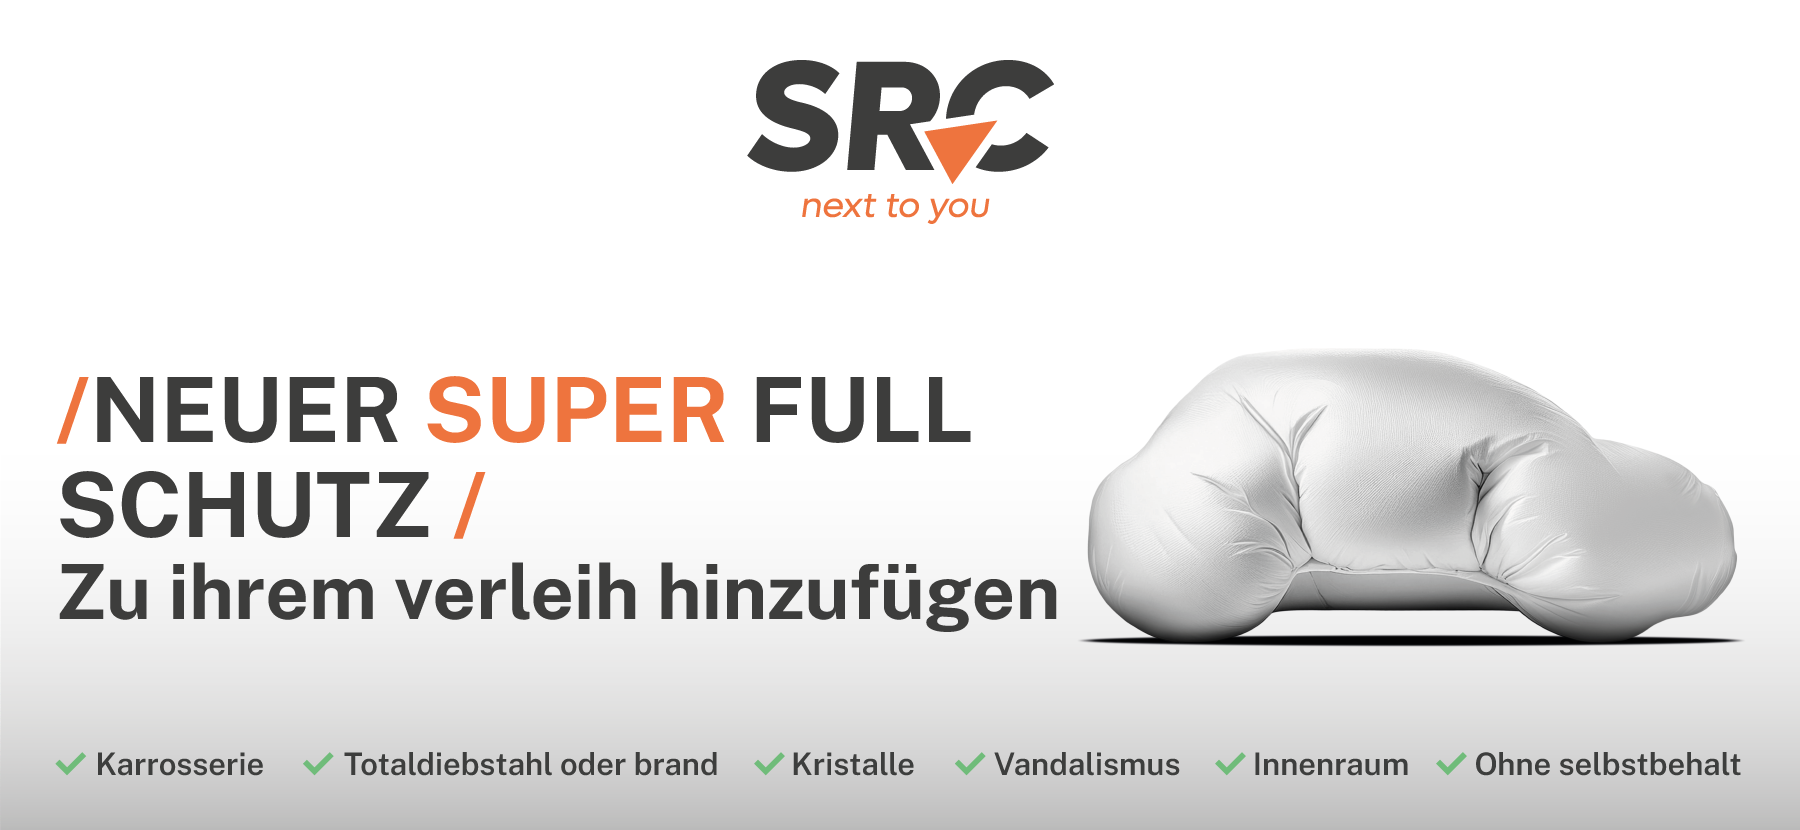 SRC_neuer super full schutz